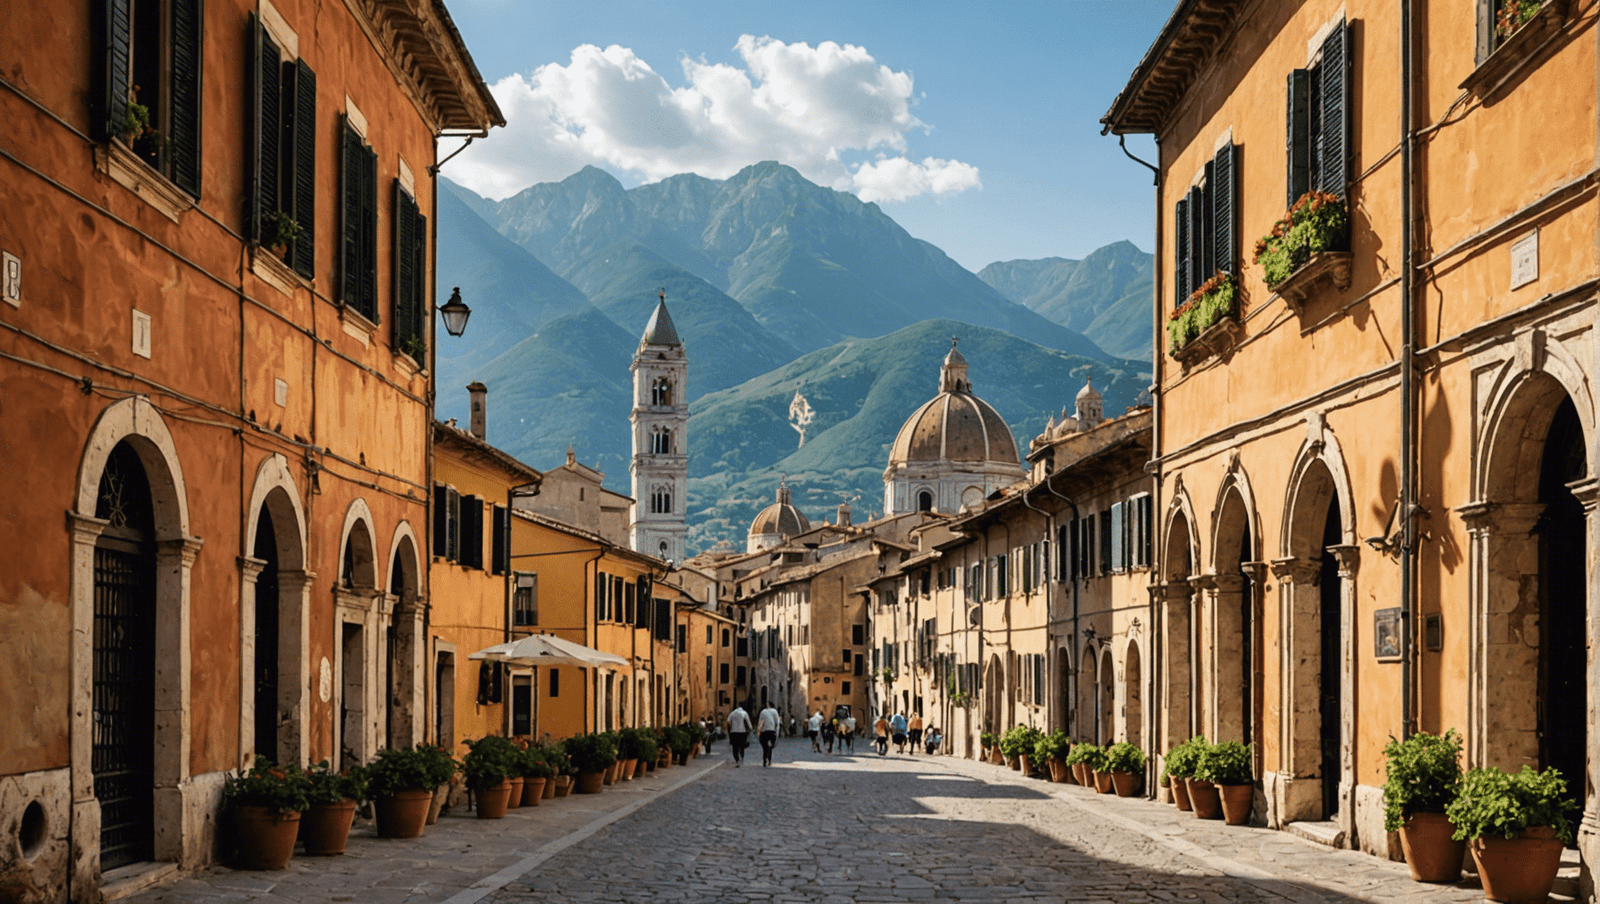 découvrez les trésors de l'italie avec notre guide de voyage : art, culture, gastronomie et paysages enchanteurs. planifiez votre voyage en bella italia !